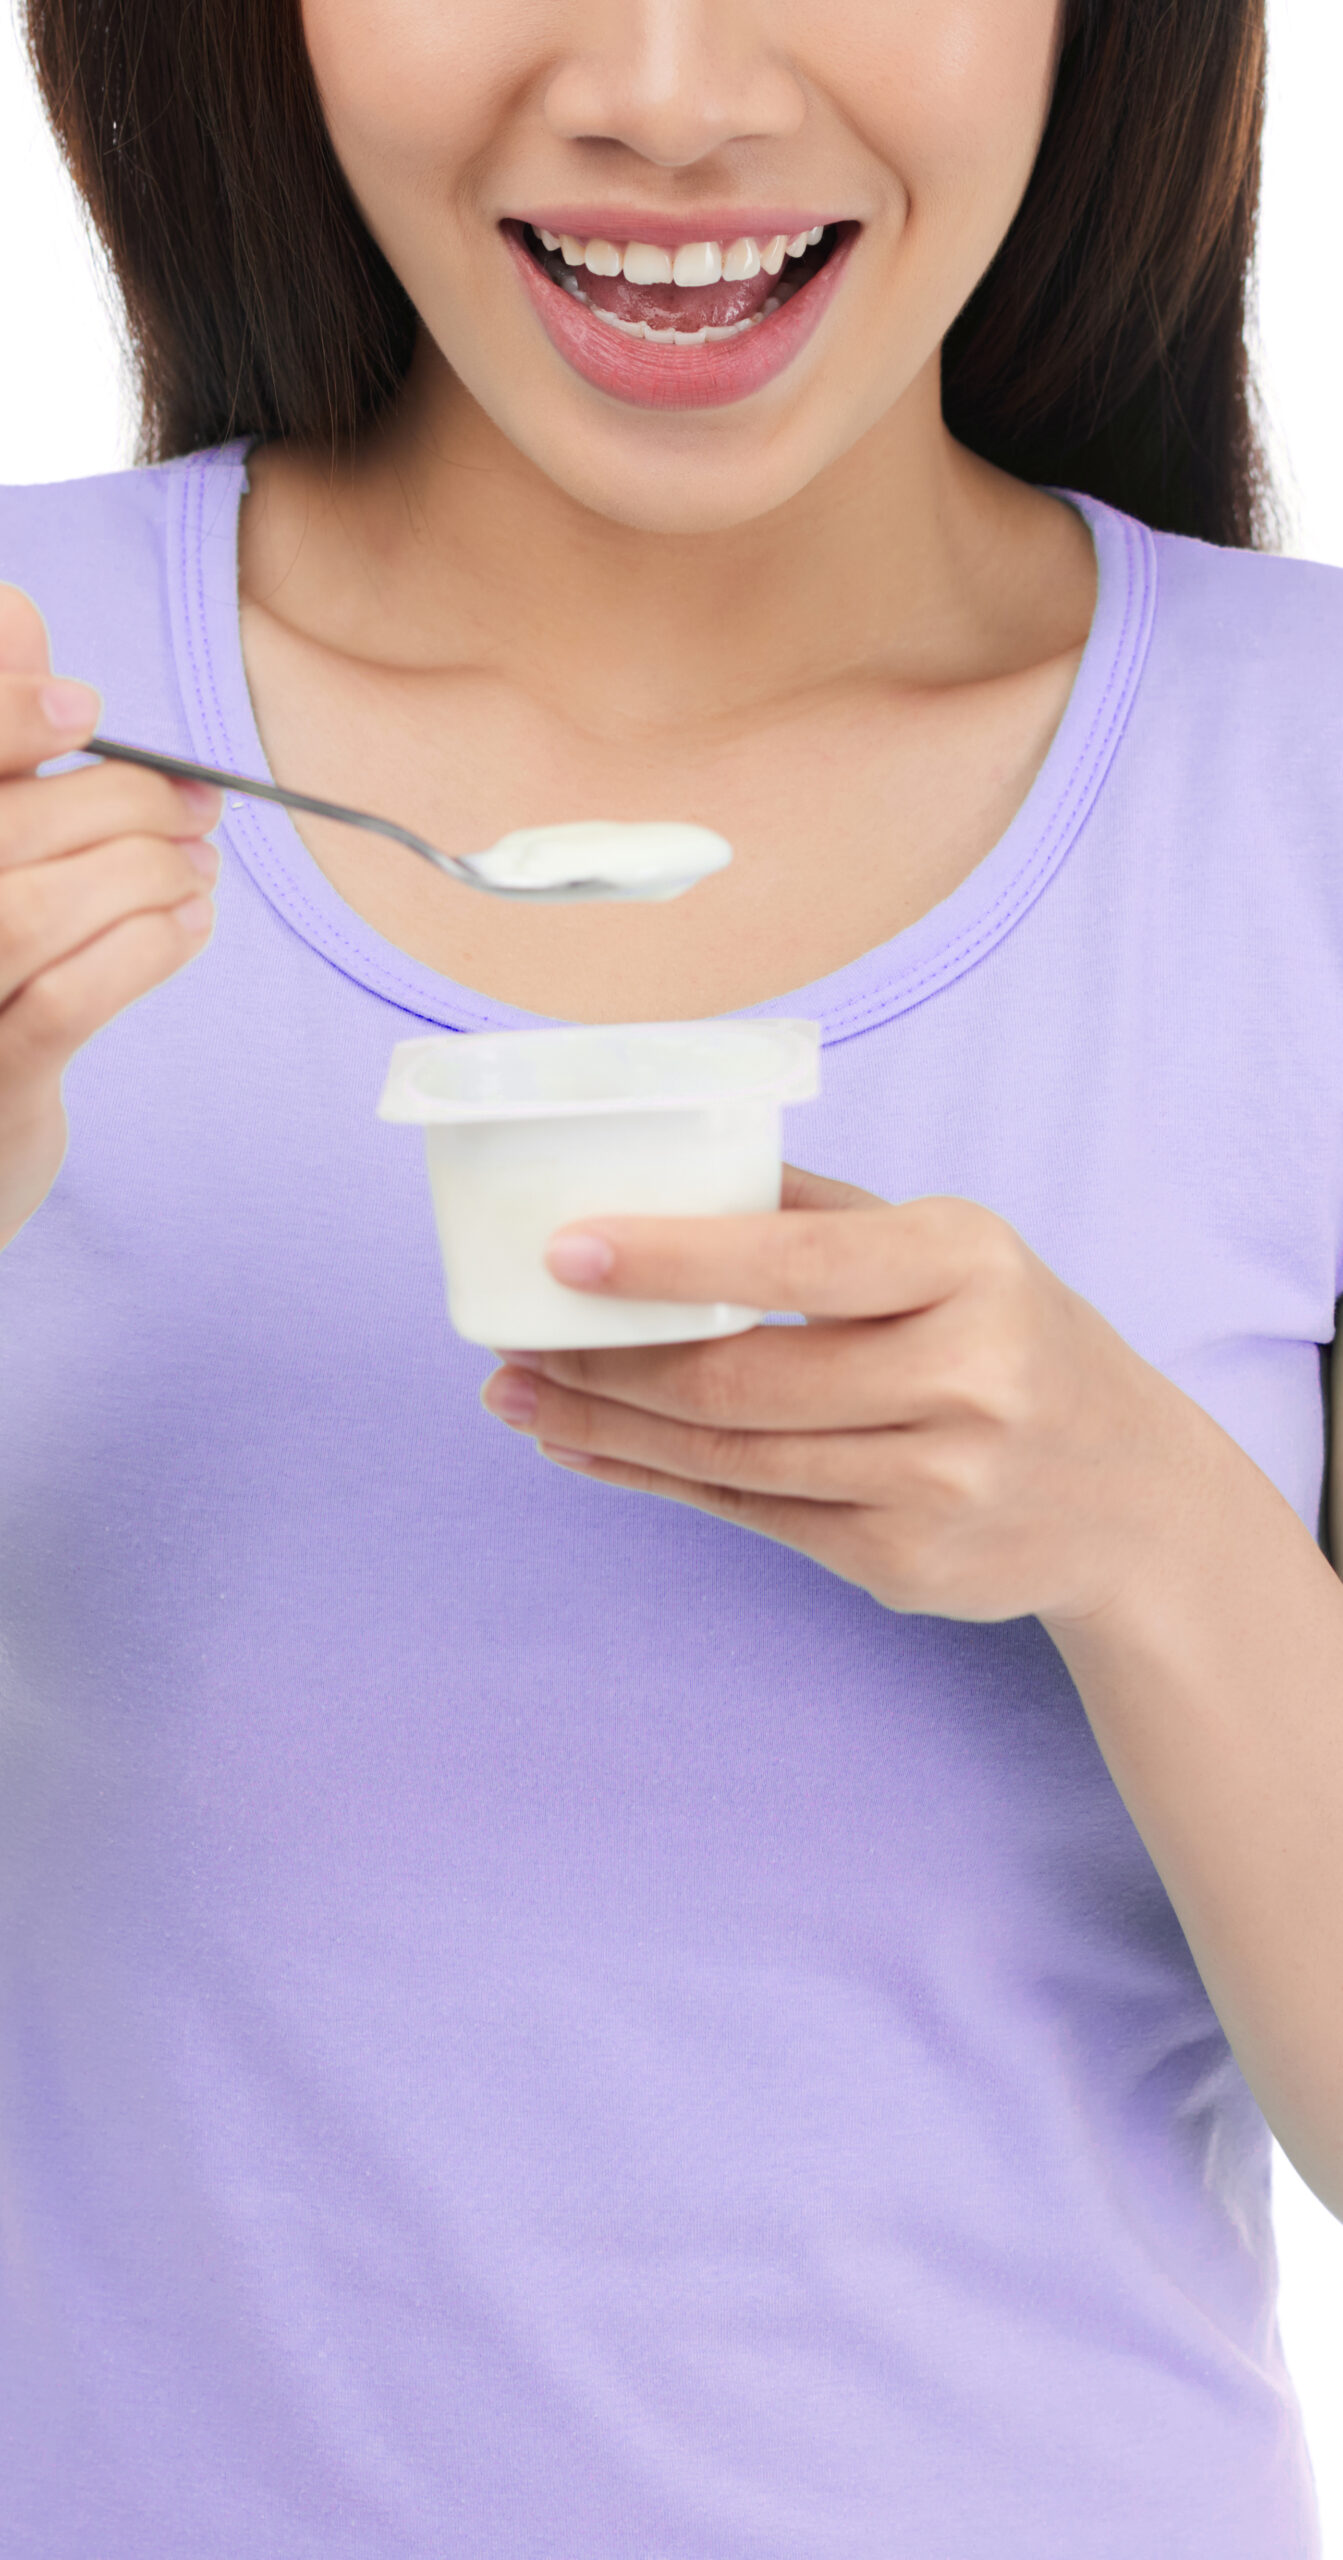 Smiling Woman Eating Yogurt